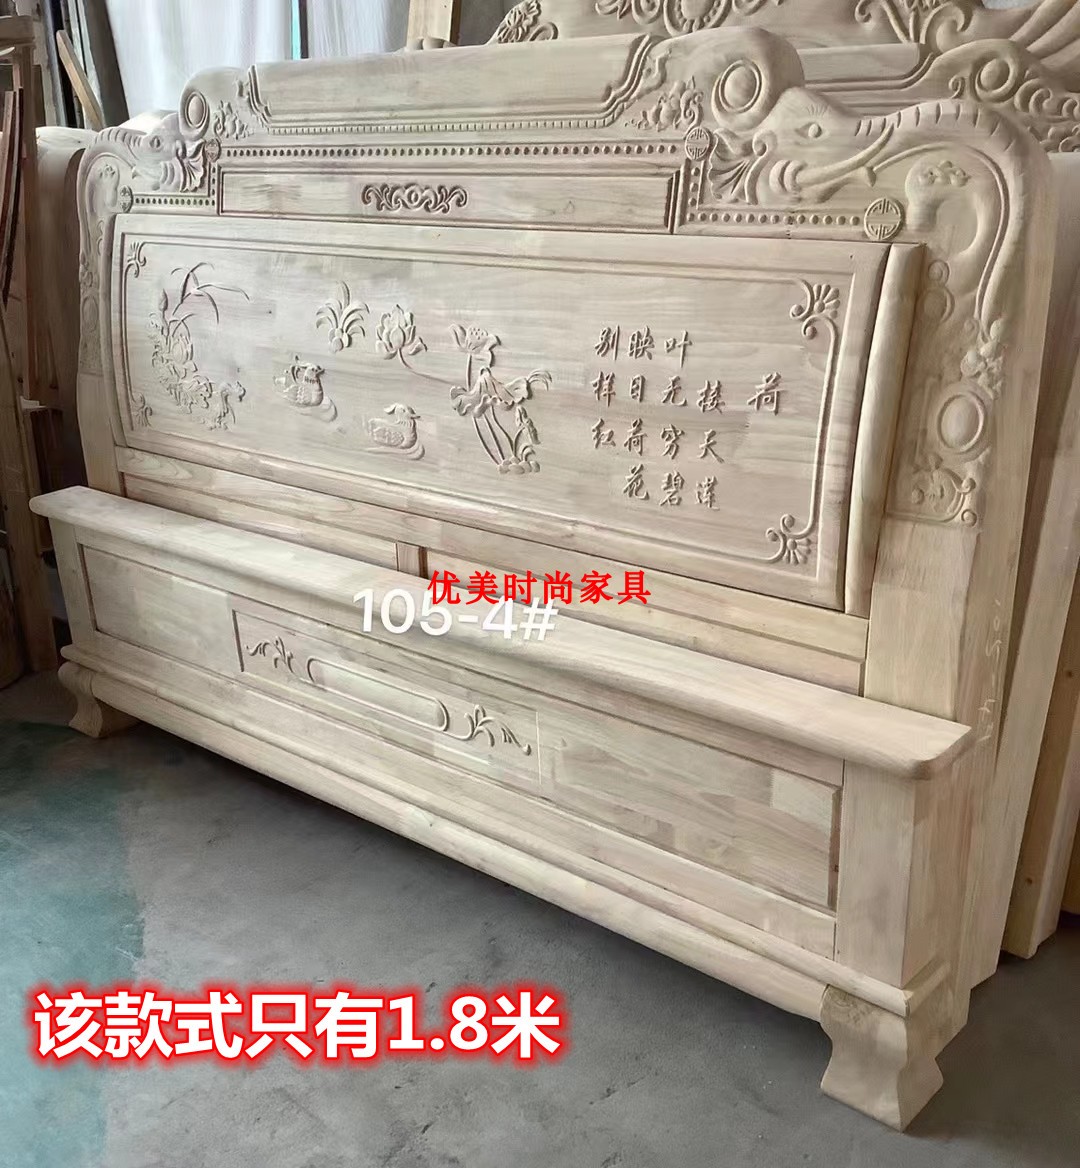 仿古雕花双人床白茬 现代中式古典实木雕花床白胚 住宅家具半成品